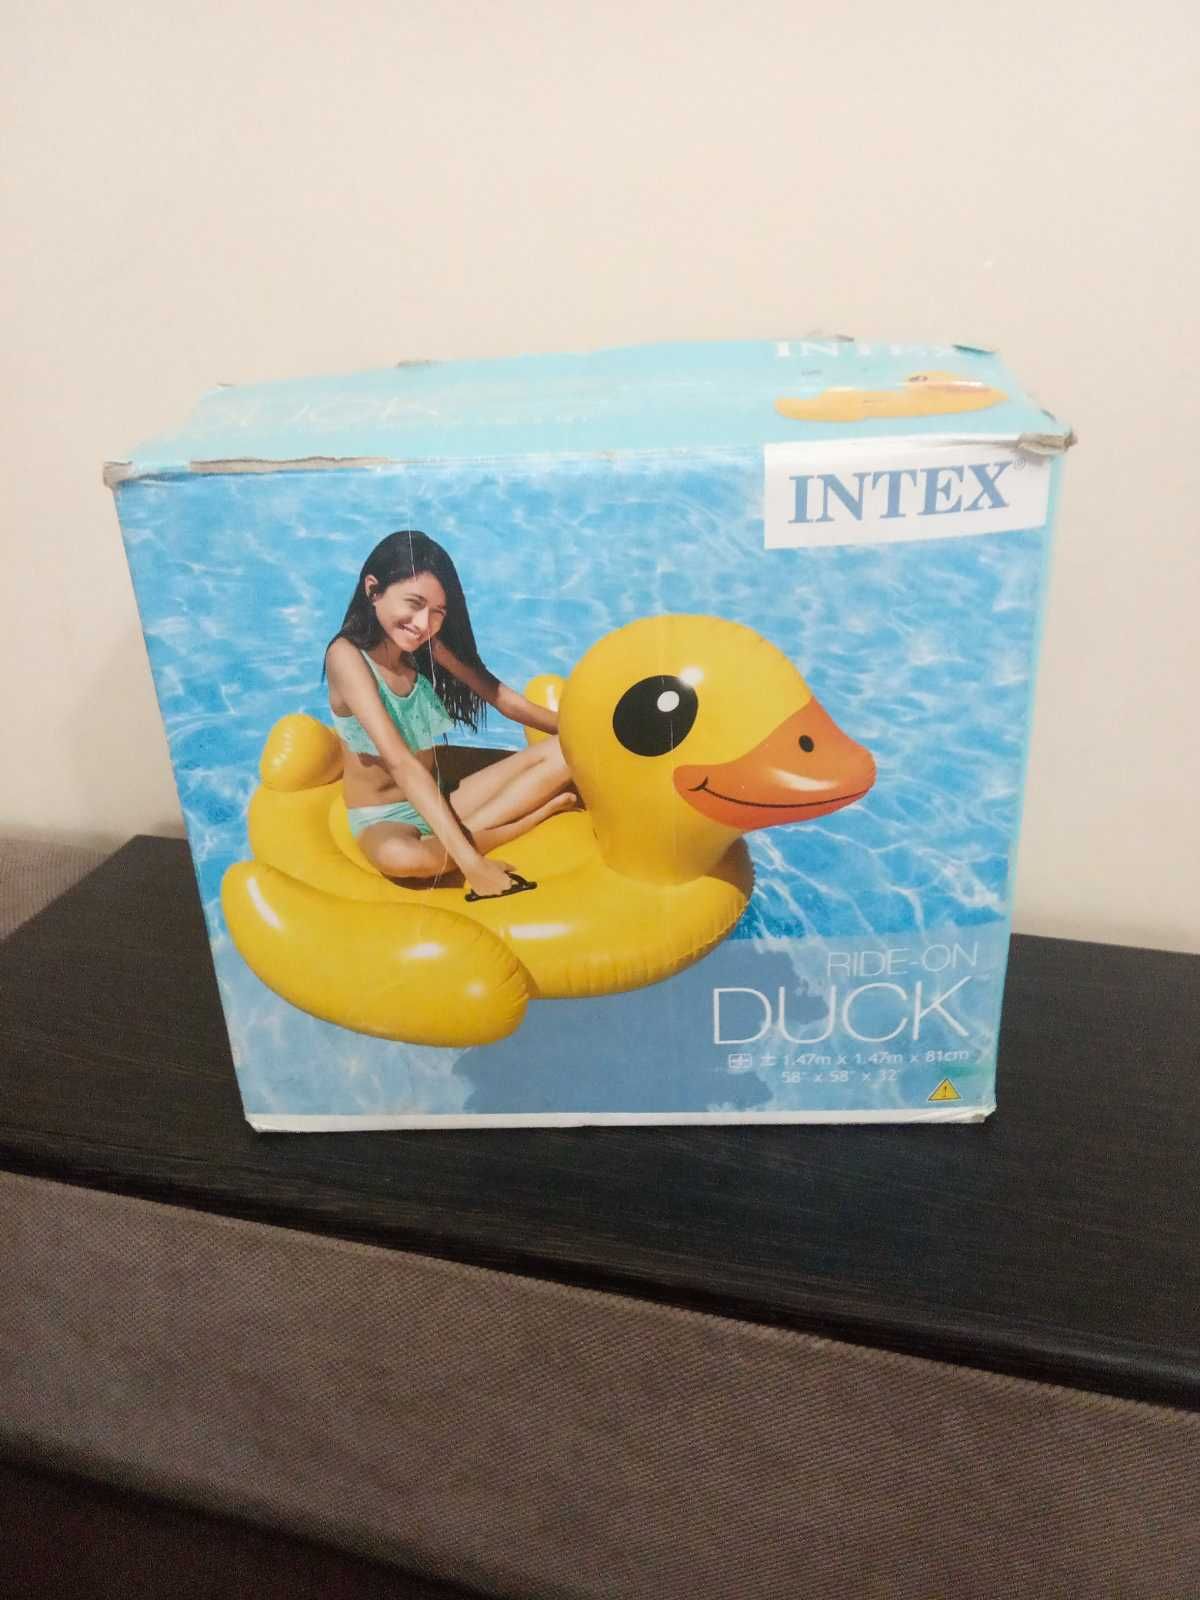 Надувна іграшка пліт для плавання Intex DUCK каченя плотик 57556 пляж